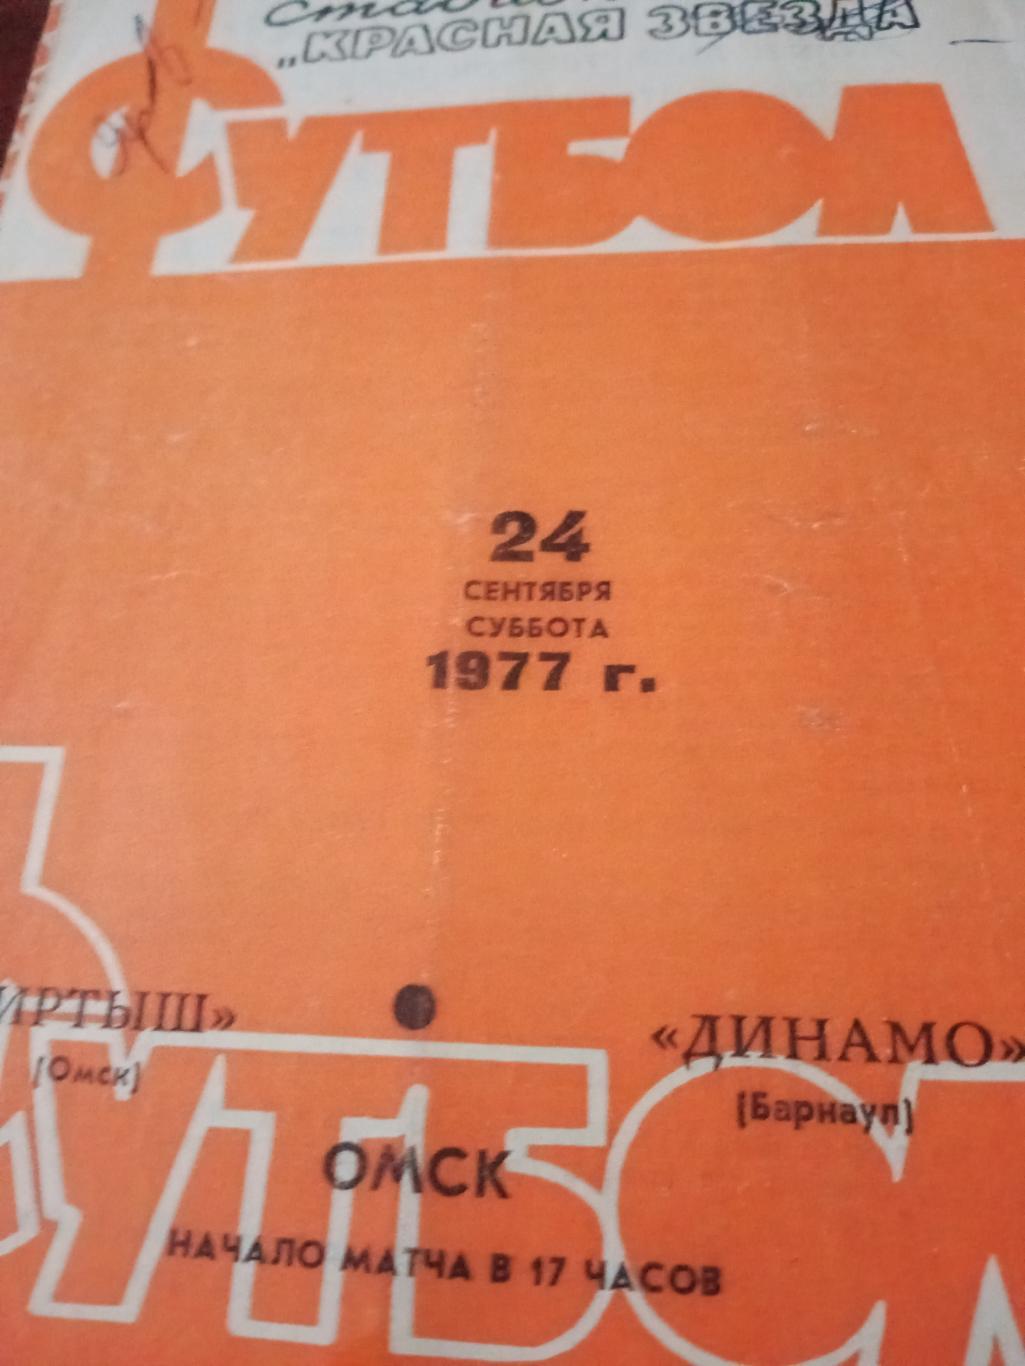 Иртыш Омск - Динамо Барнаул. 24 сентября 1977 год